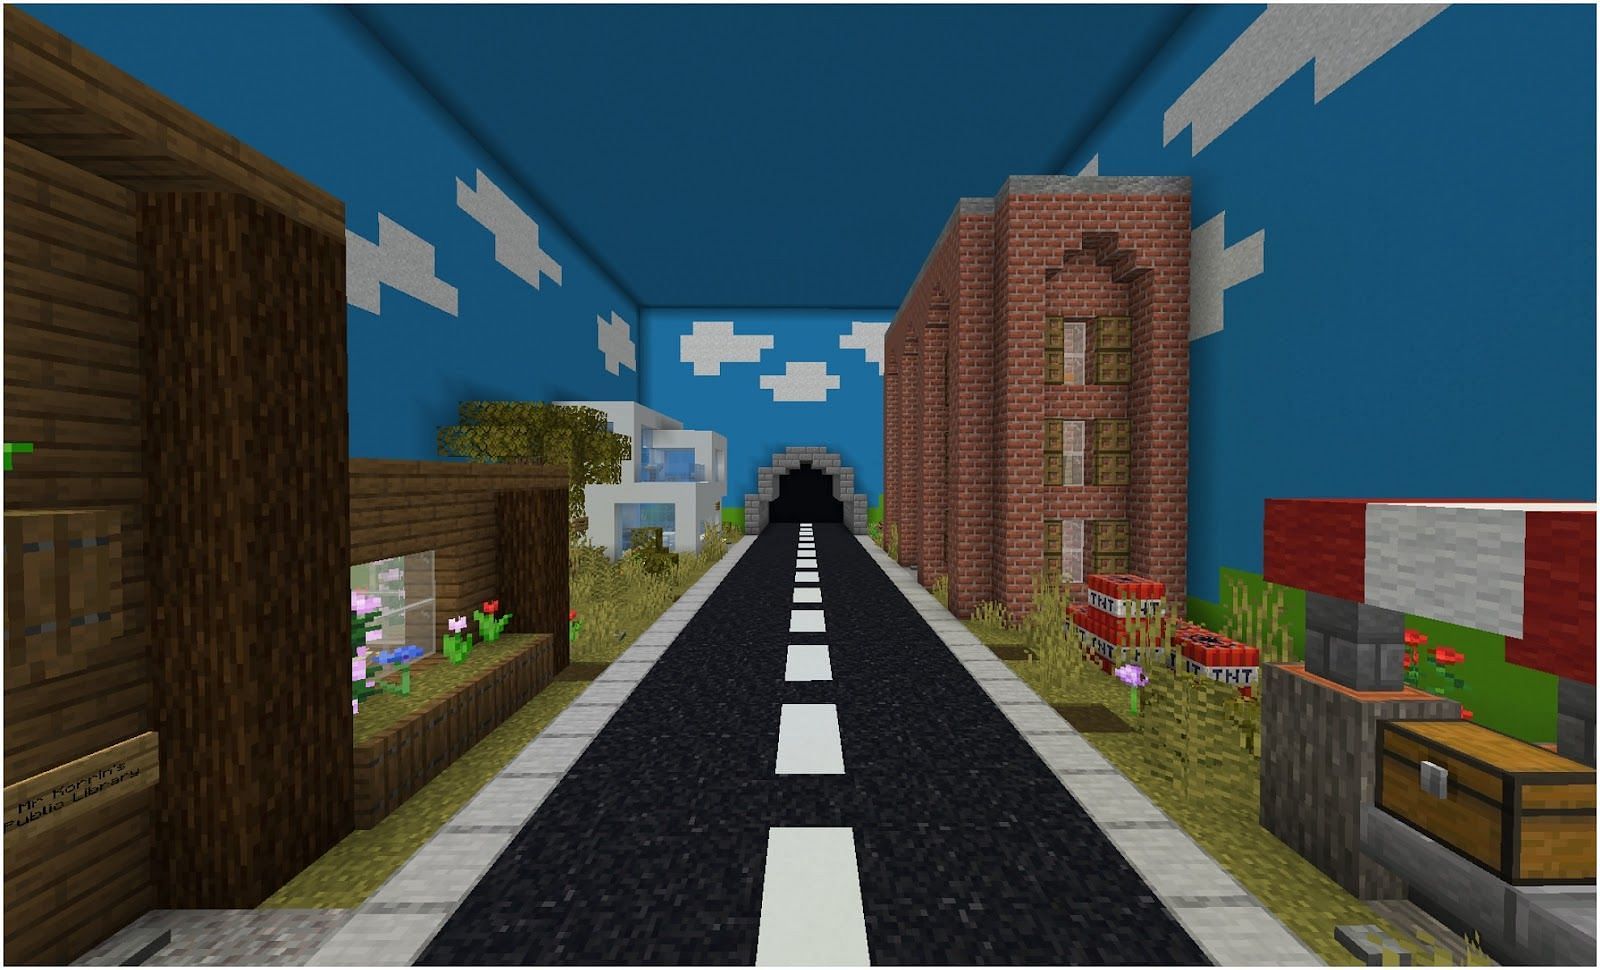 Puzzle Maps are quite popular in Minecraft (Image via Minecraft)